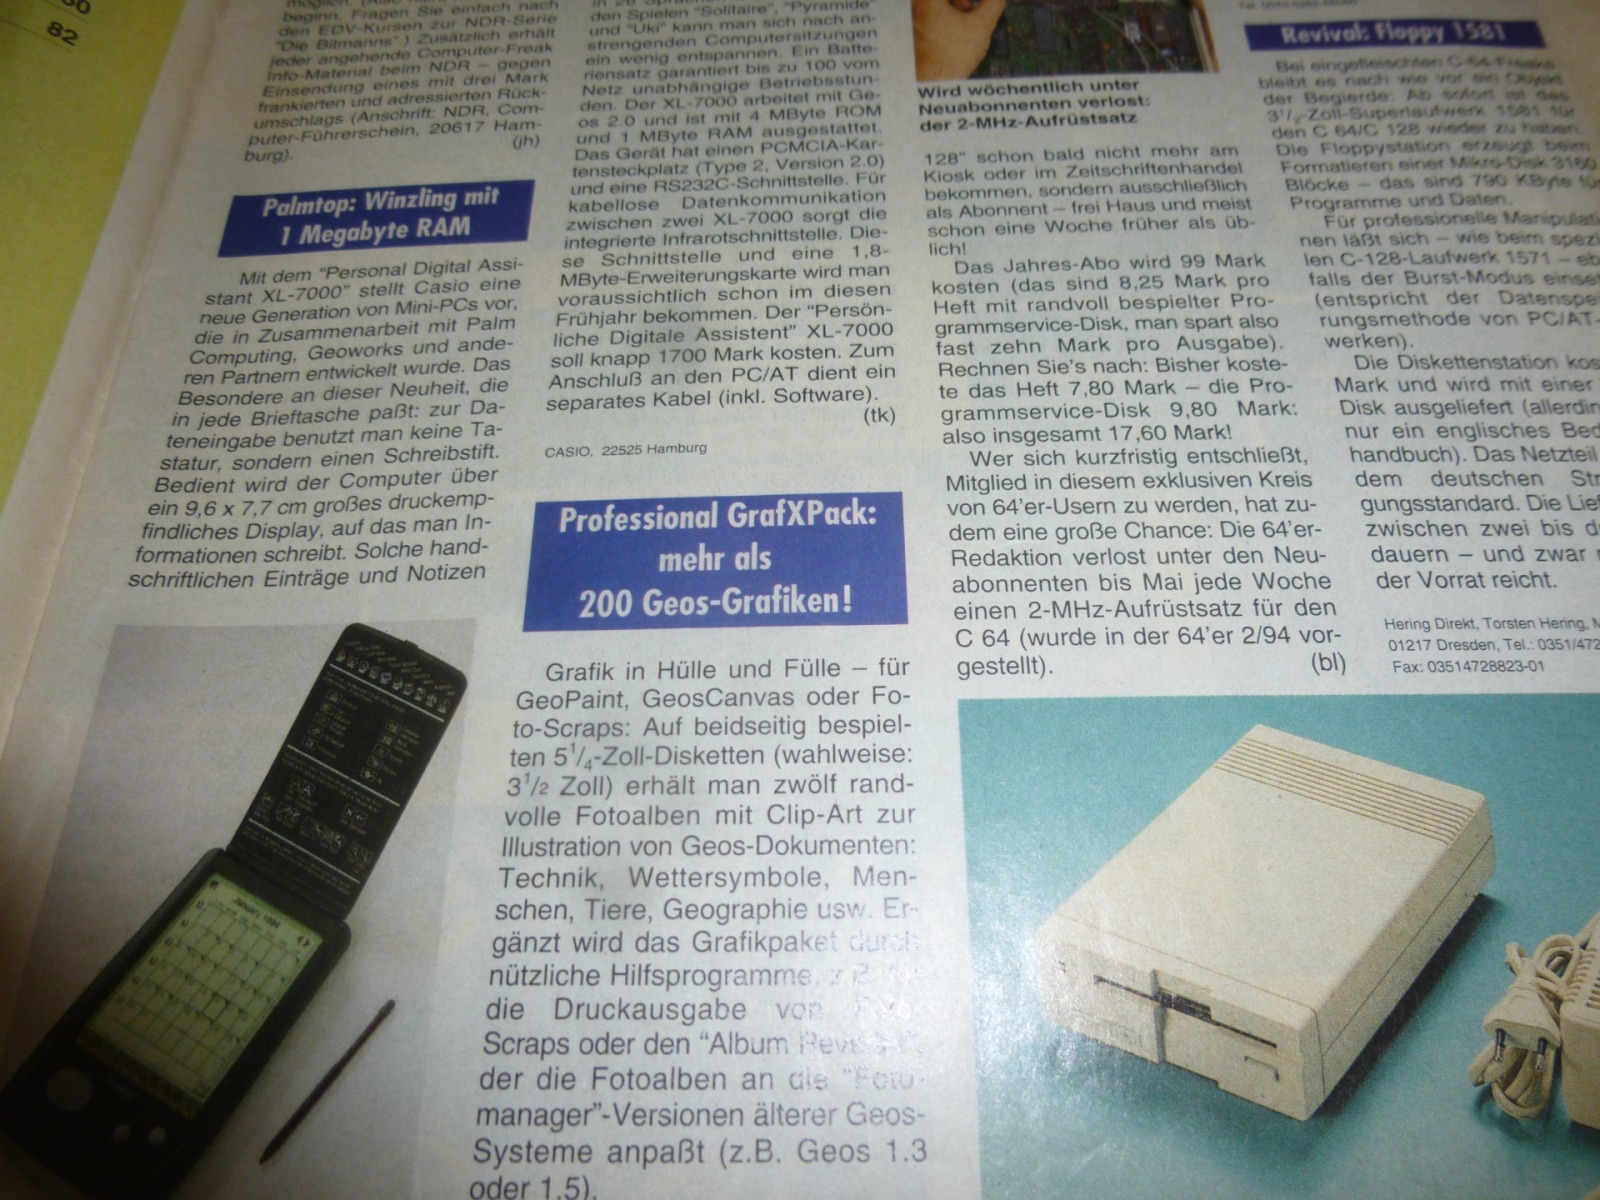 64er Magazin Ausgabe 3/94 1994 3